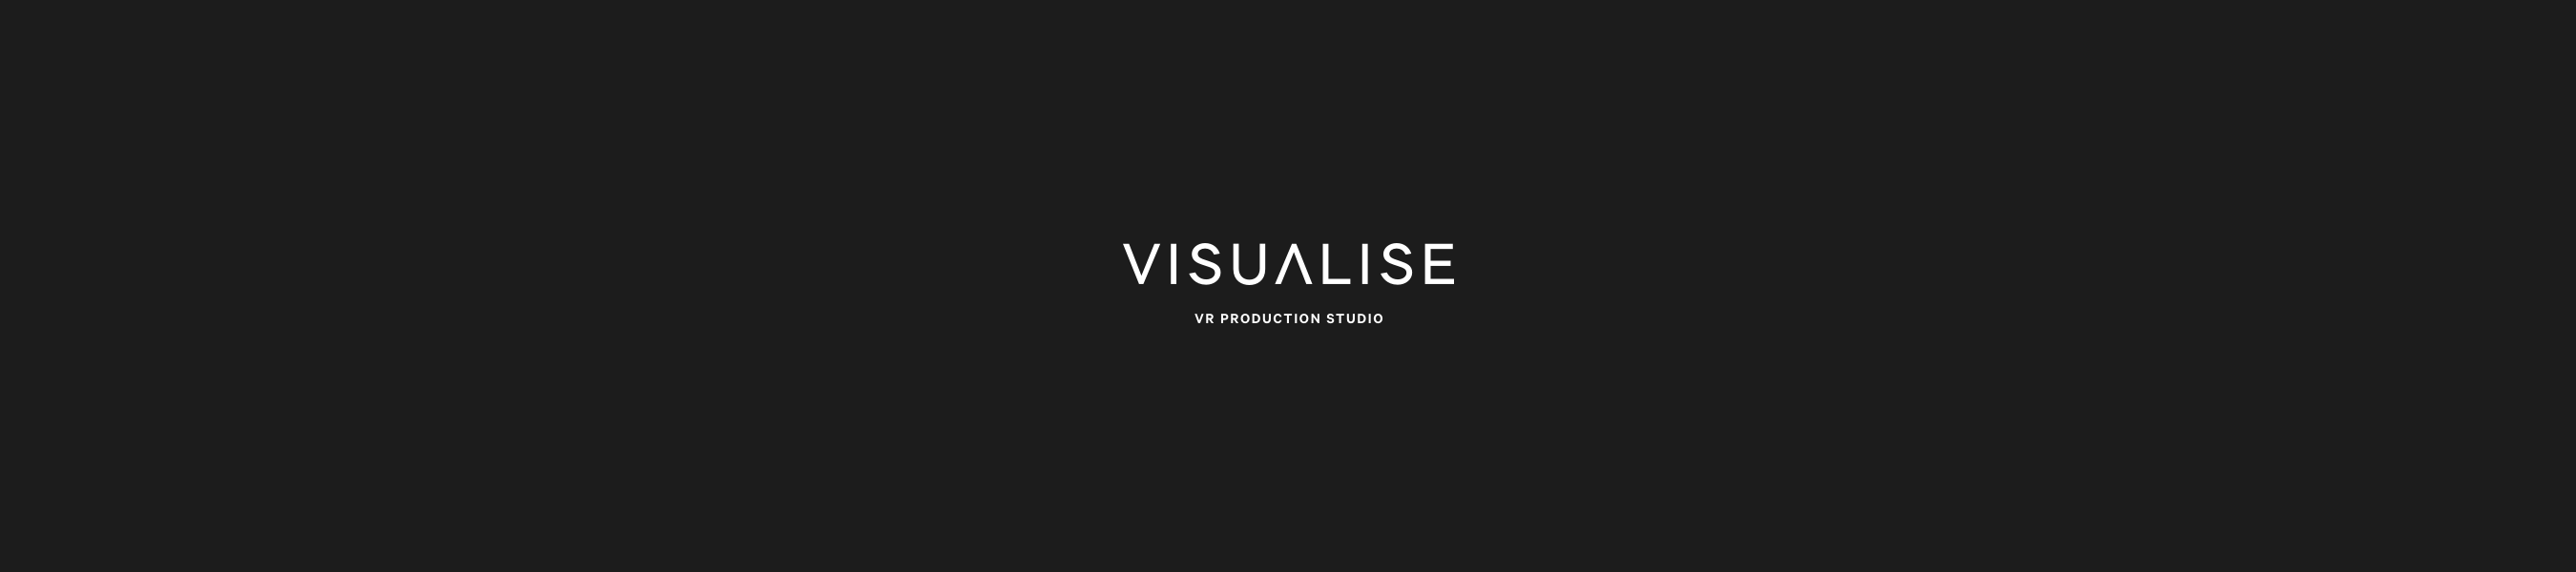 visualise-team